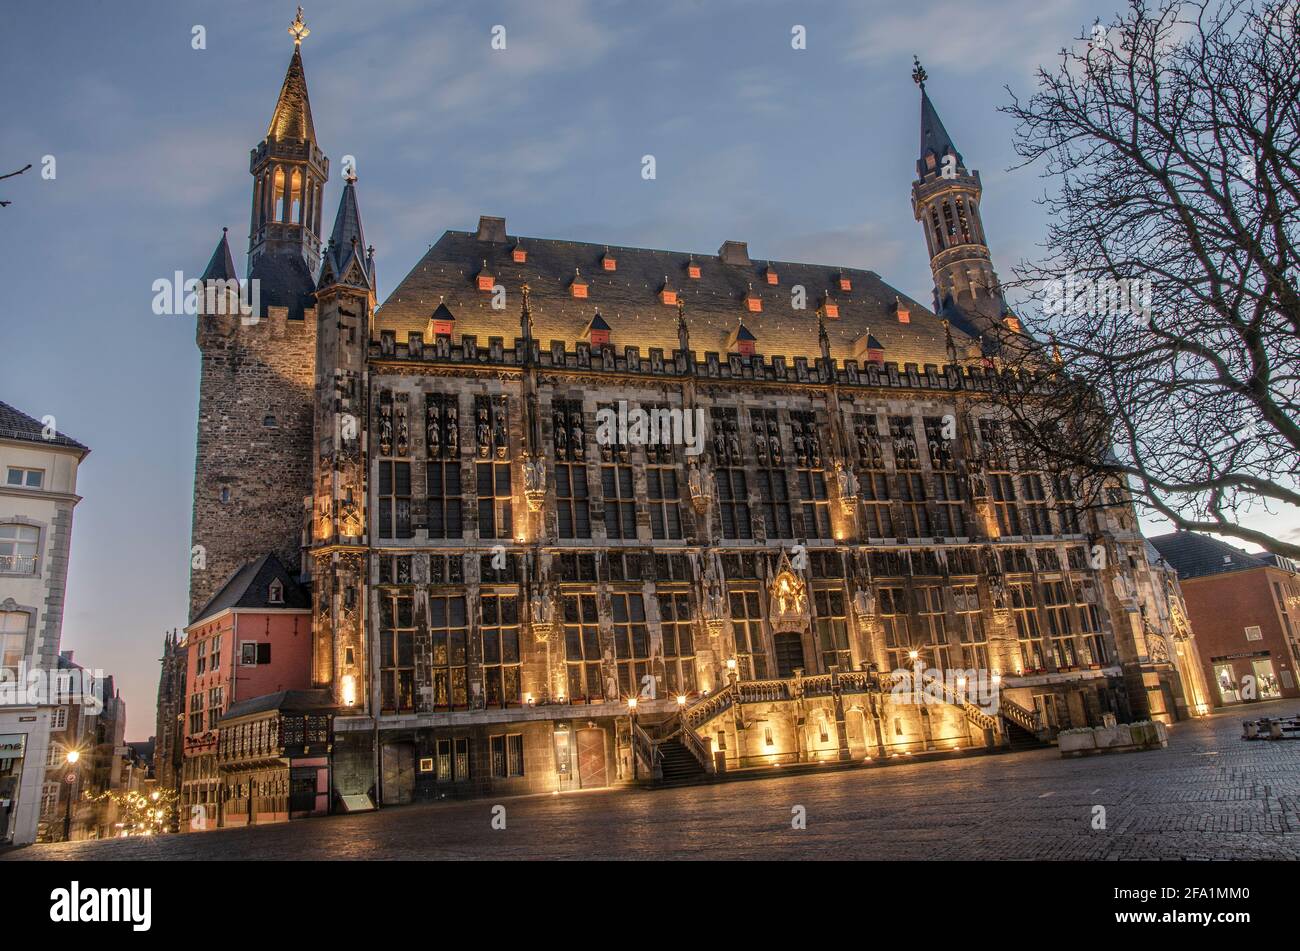 Aachen - Rathaus Stock Photo